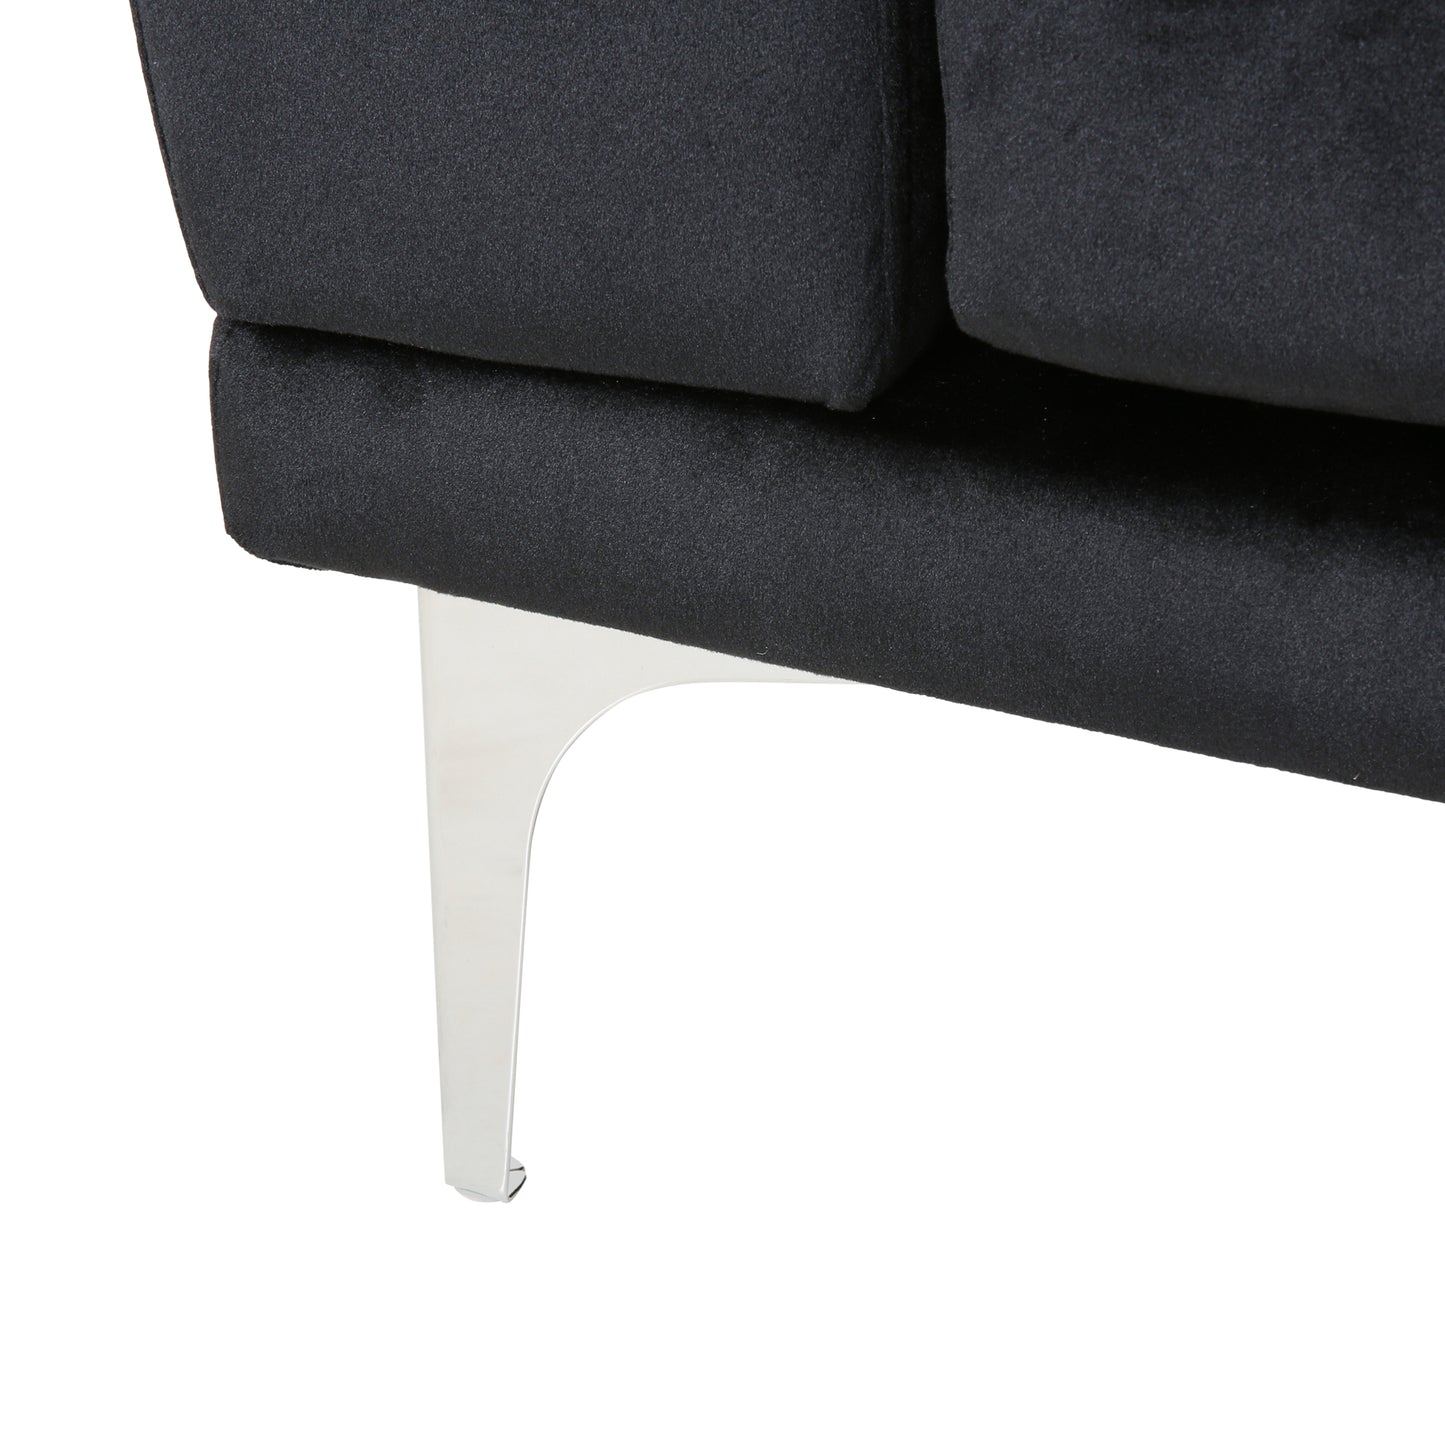 Annagrace Modern Glam 4 Seater Velvet Sofa